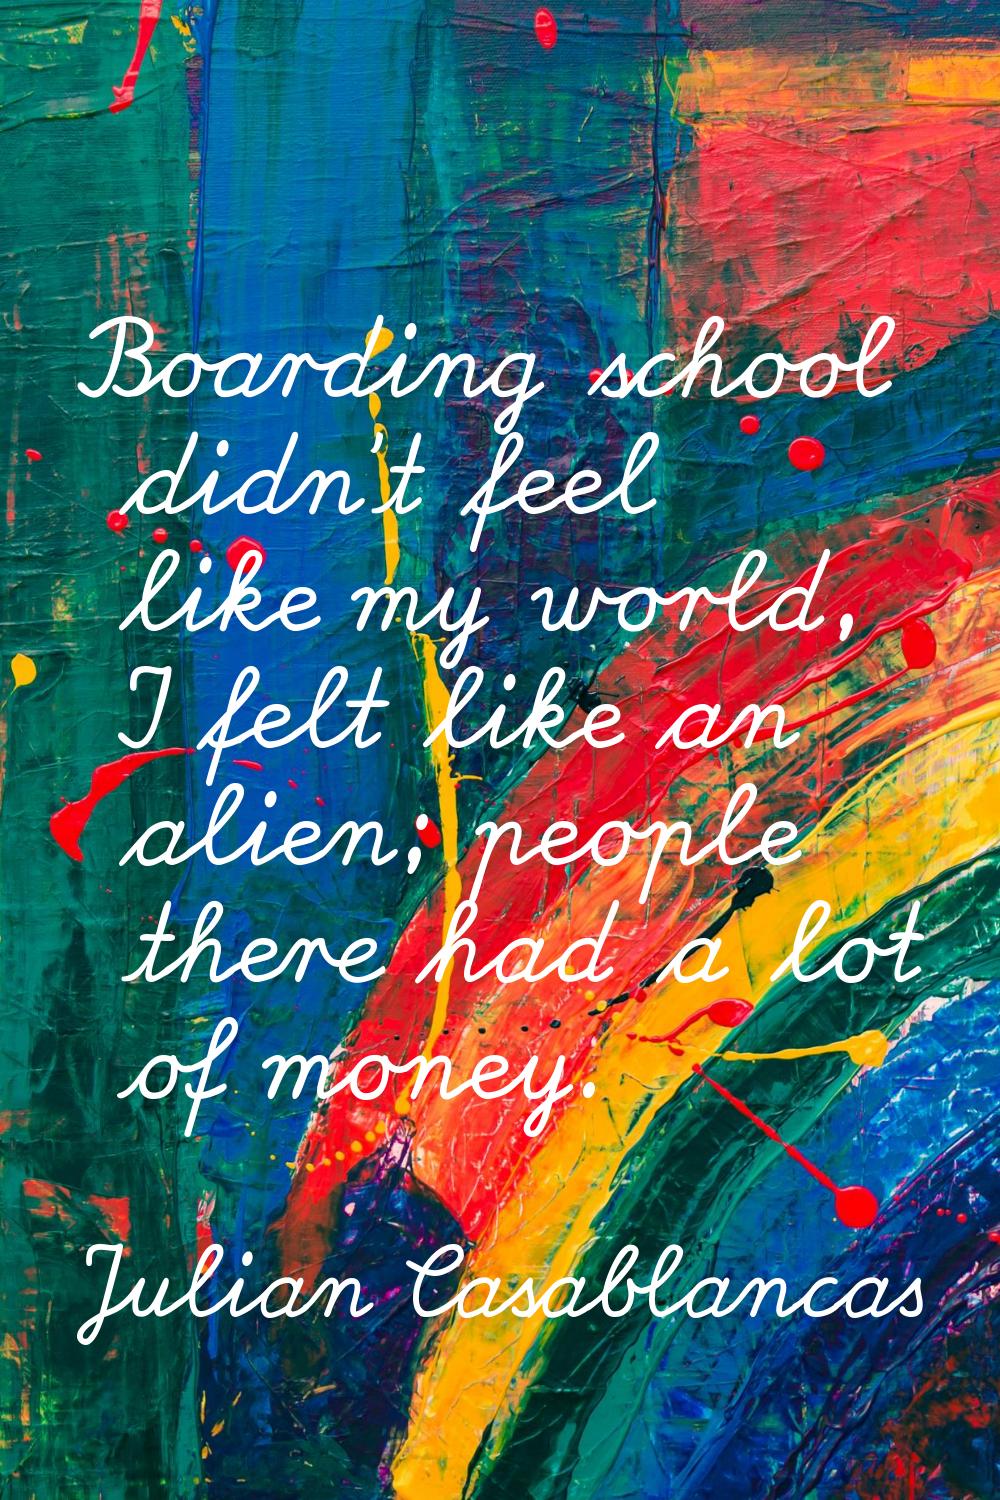 Boarding school didn't feel like my world, I felt like an alien; people there had a lot of money.